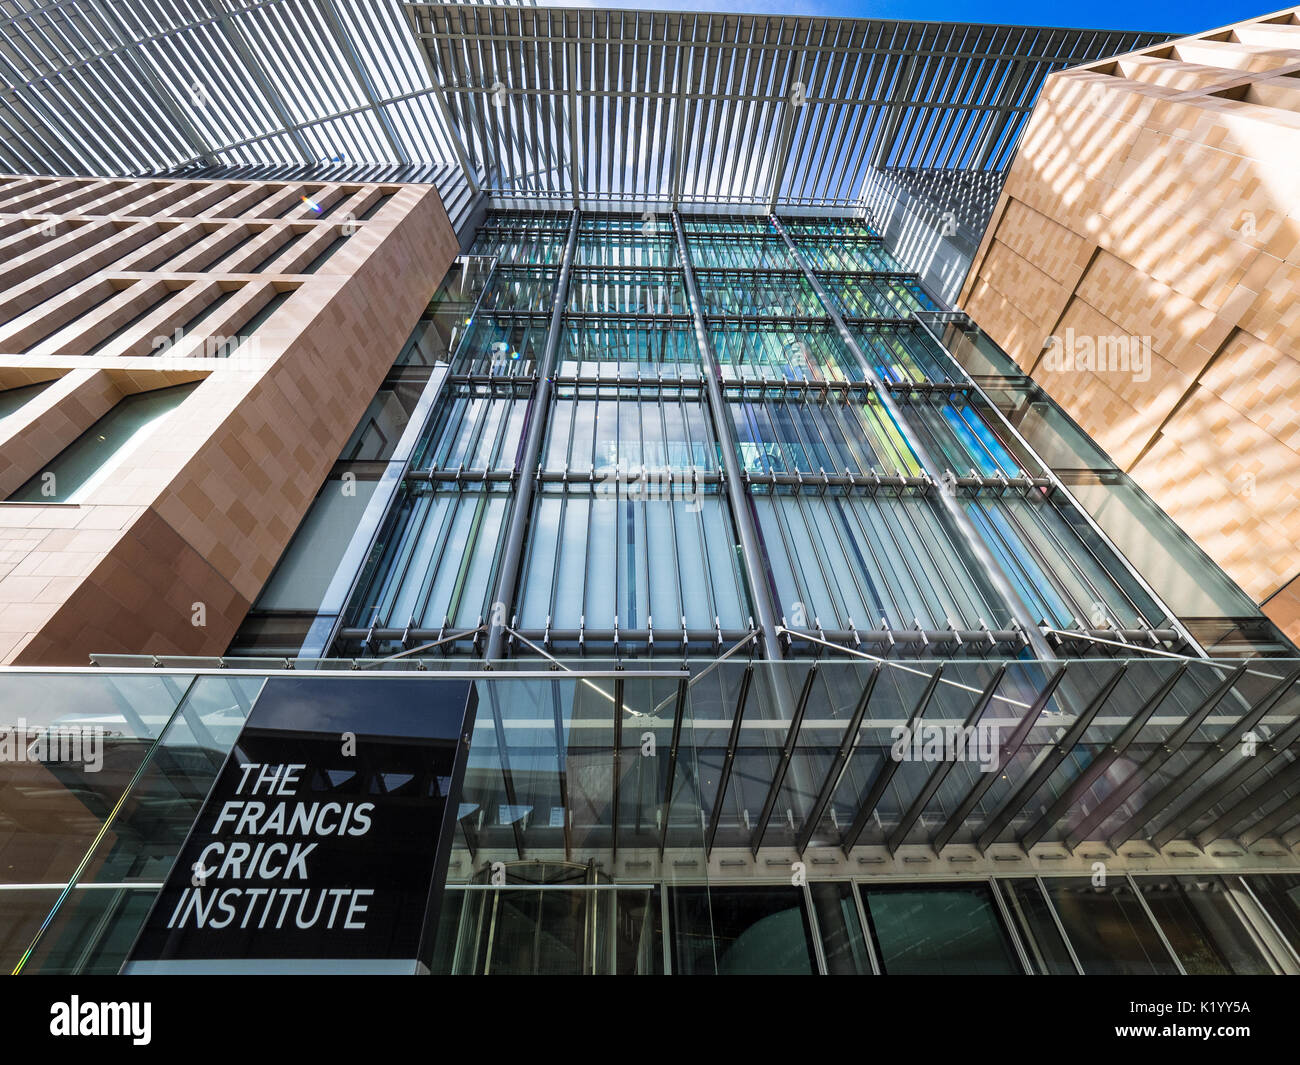 Francis Crick Institute London - un nouvel institut de recherche biomédicale a ouvert ses portes en août 2016 Banque D'Images